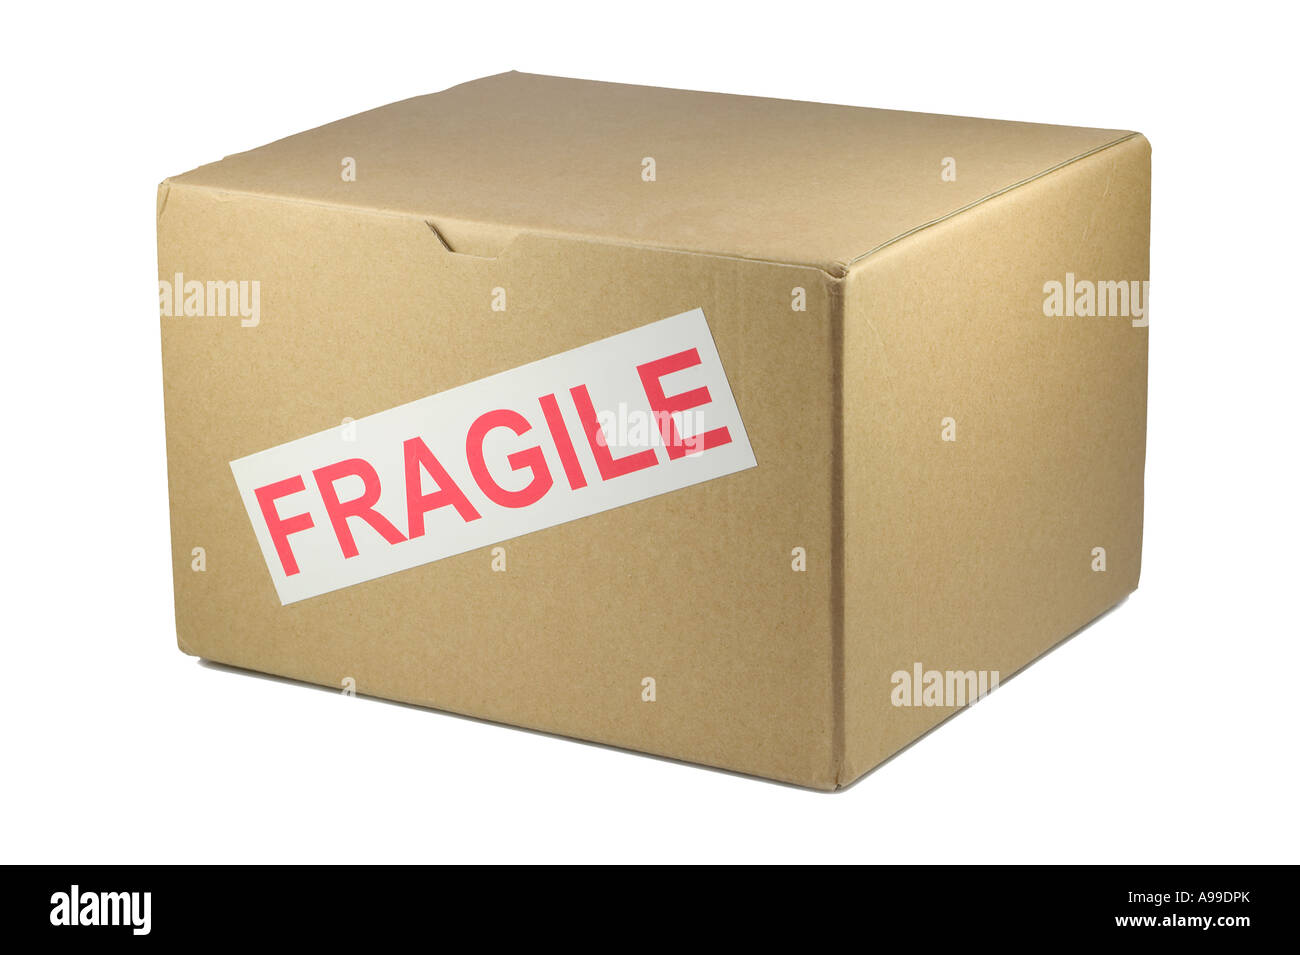 Caja de cartón con frágil en ella aislado en blanco Foto de stock